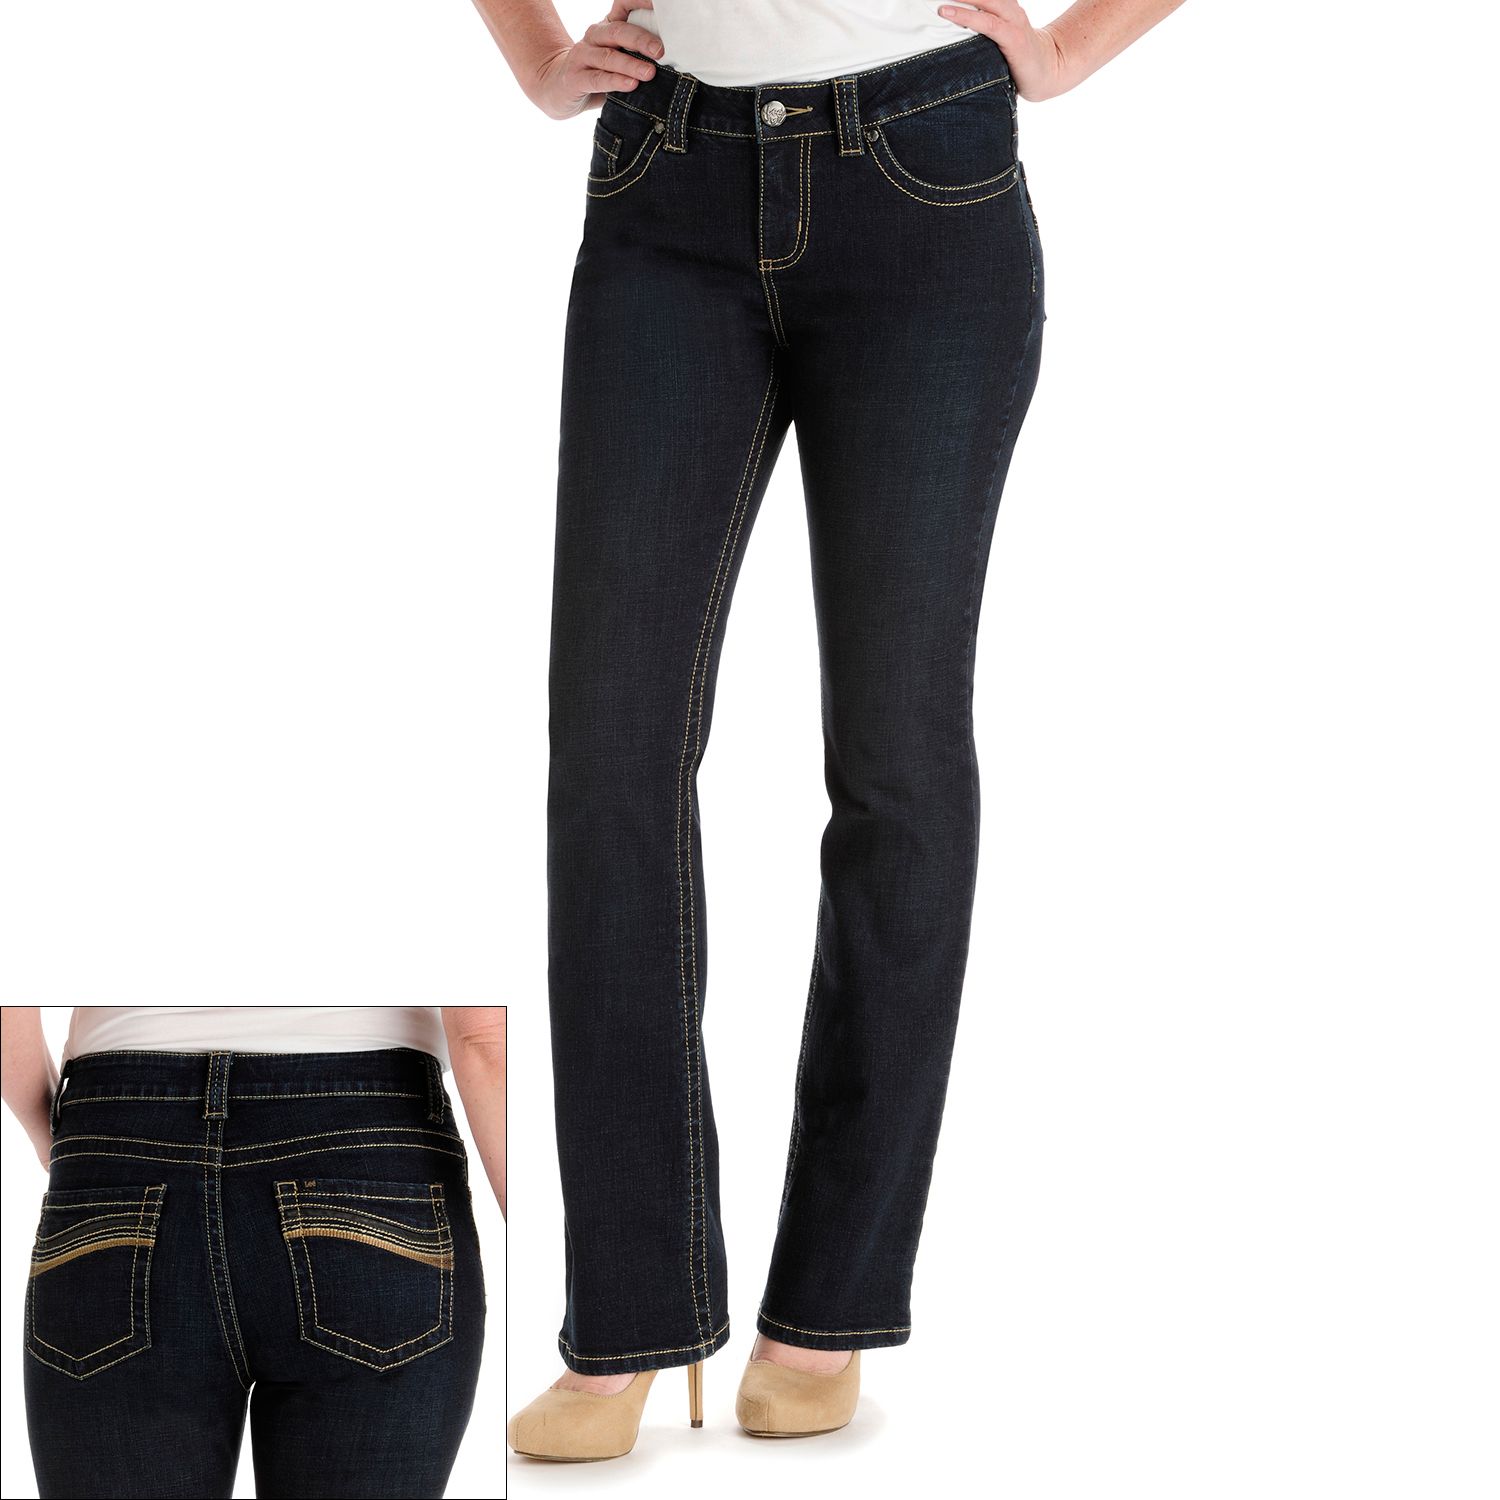 lee slender secret jeans at kohl's online -